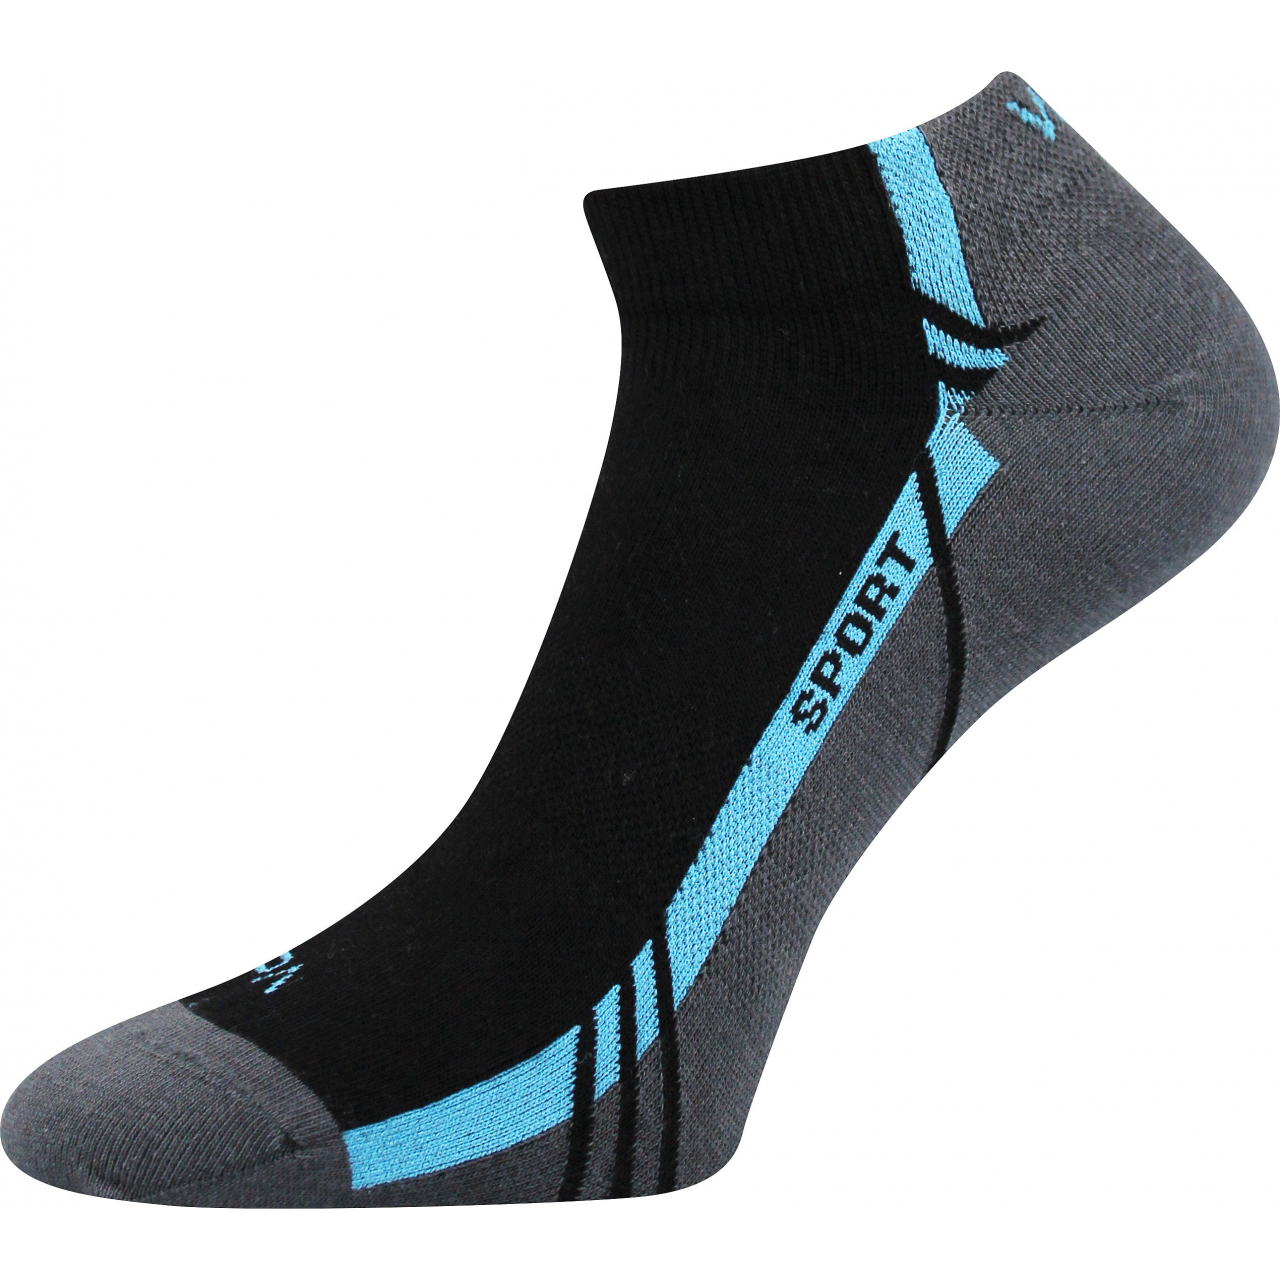 Ponožky unisex sportovní Voxx Pinas - černé-modré, 35-38